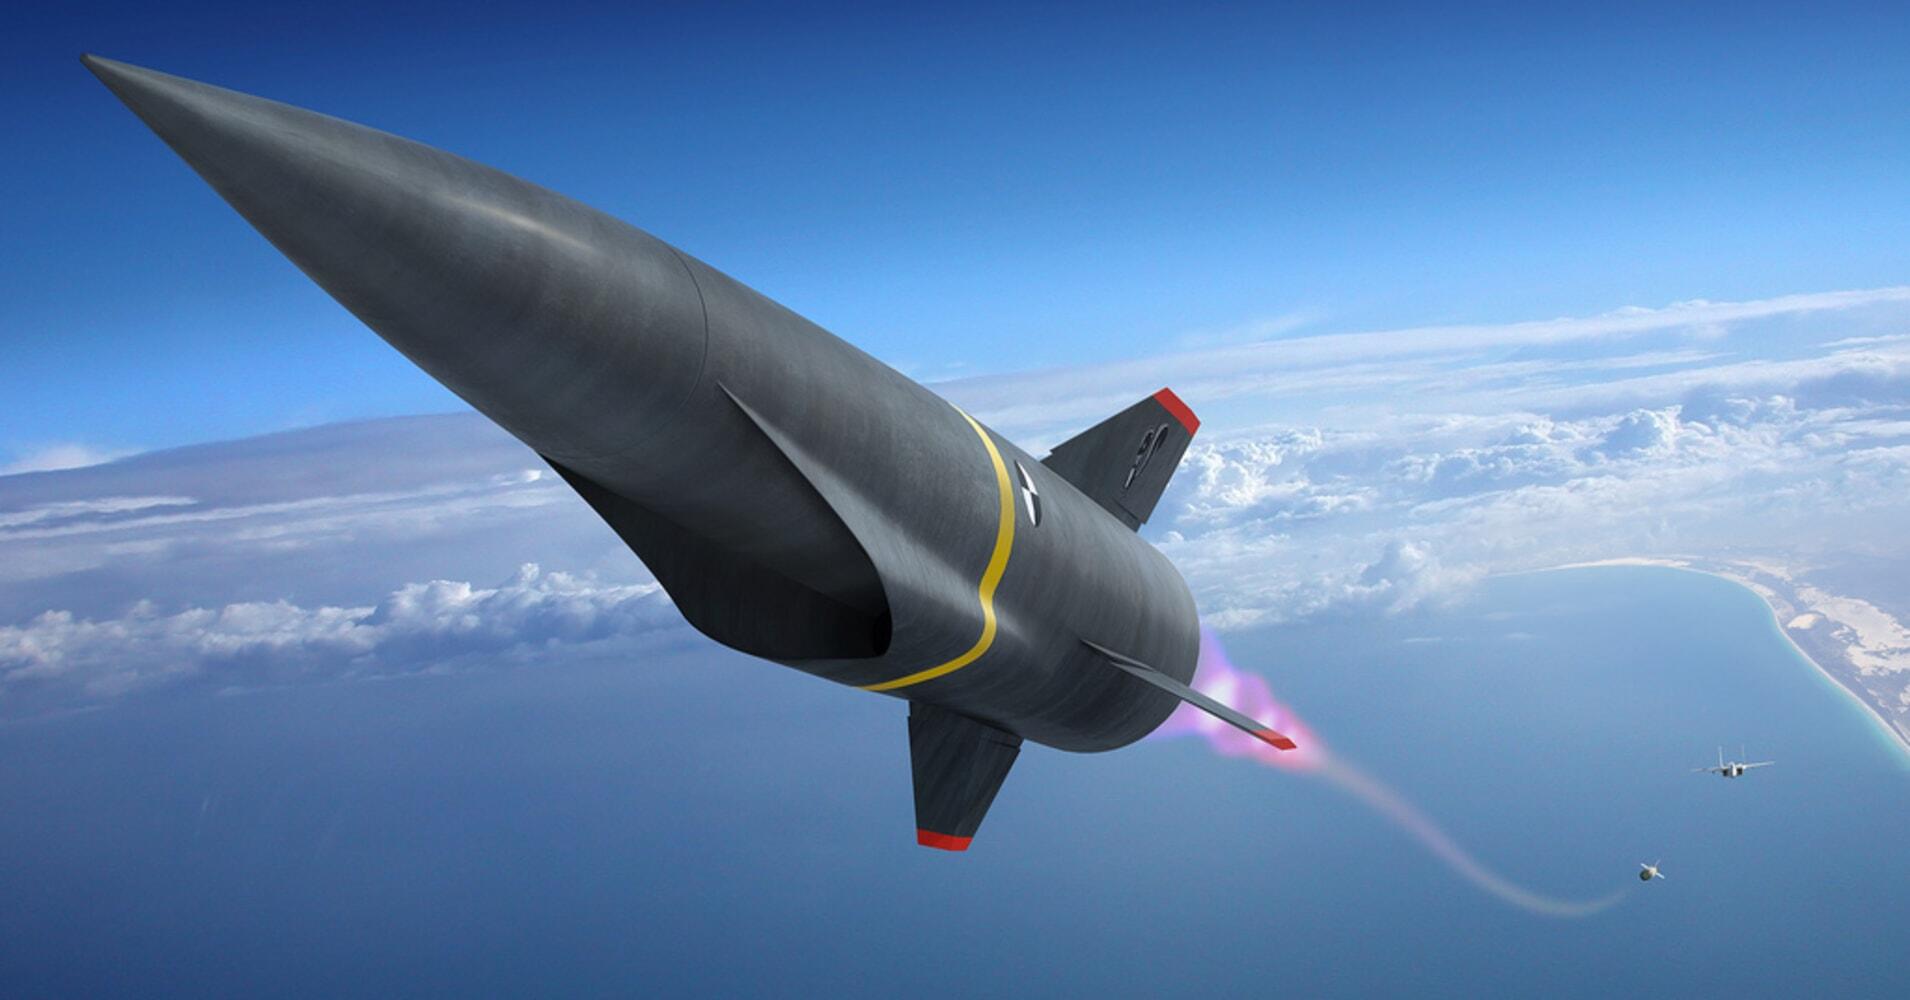 Πεντάγωνο: «Θα πραγματοποιήσουμε δοκιμές σε πολυηχητικούς  πυραύλους  των 5 mach»